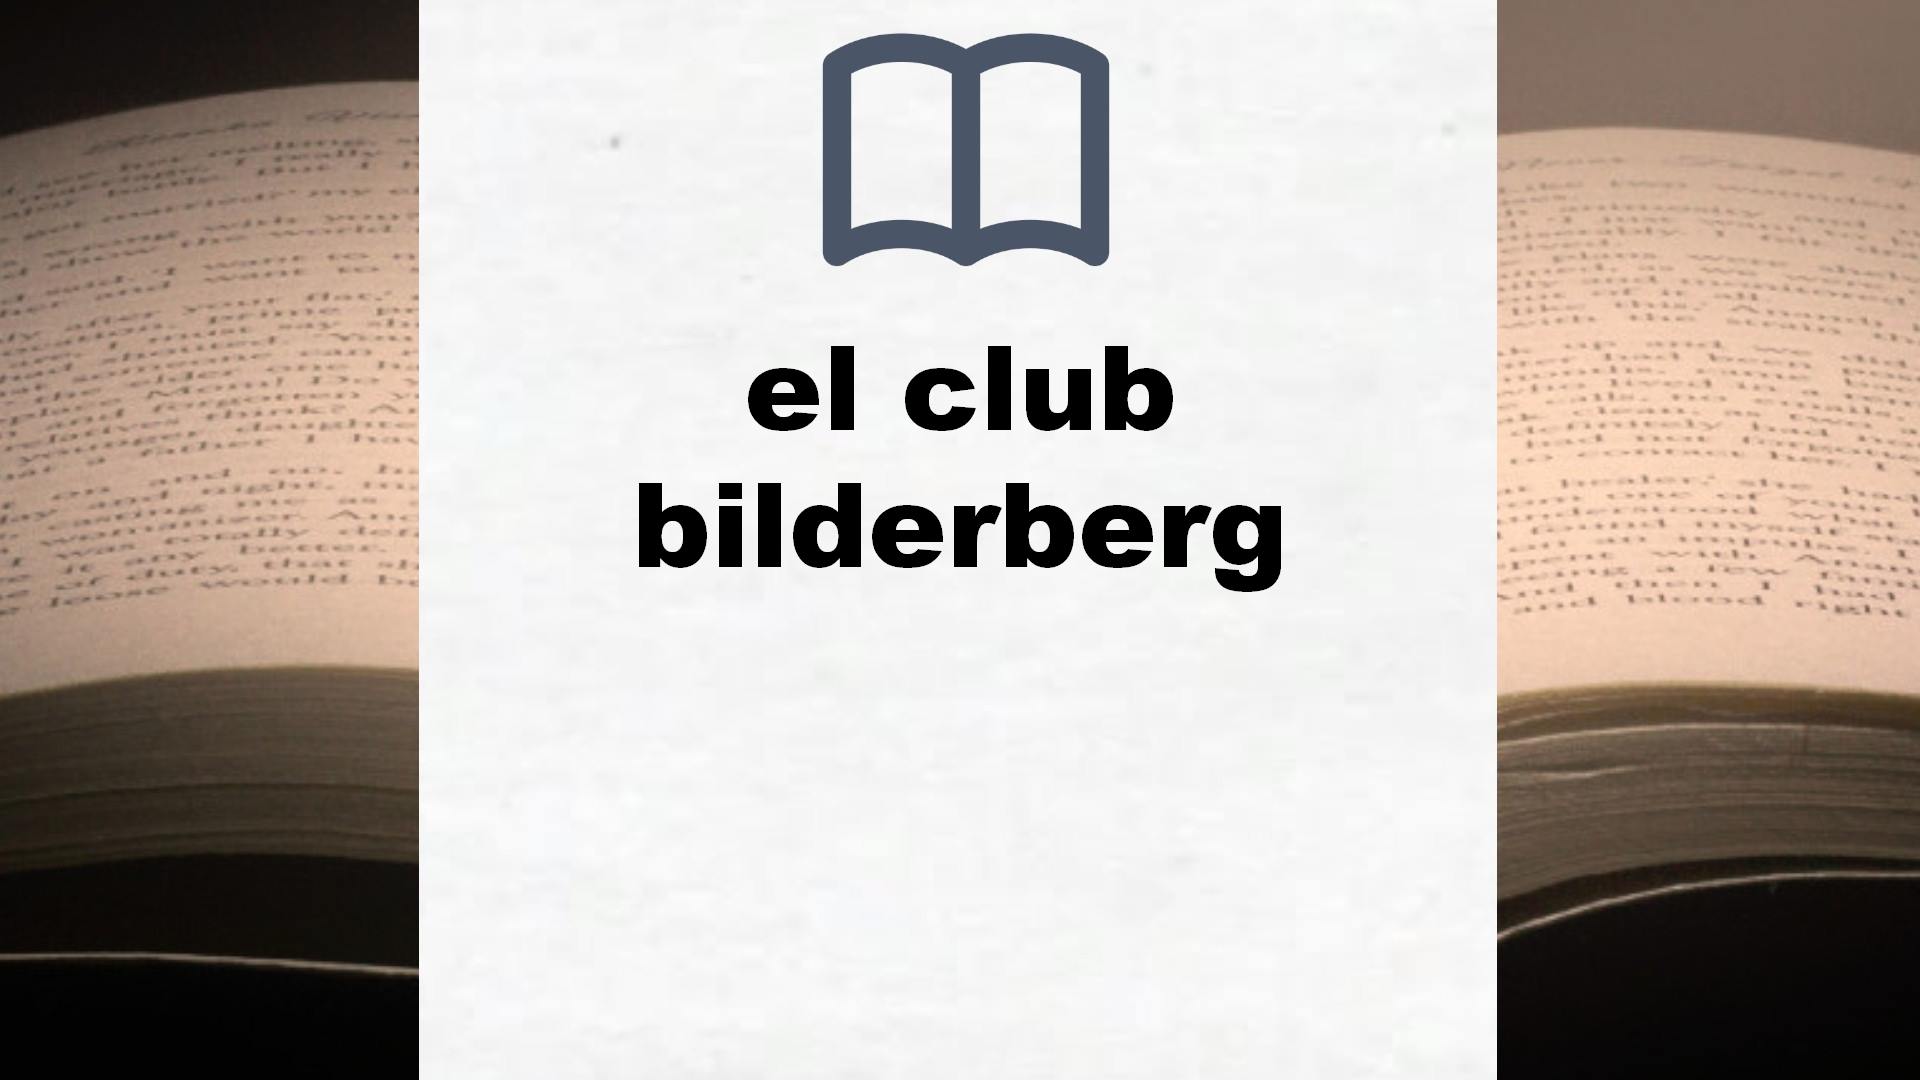 Libros sobre el club bilderberg